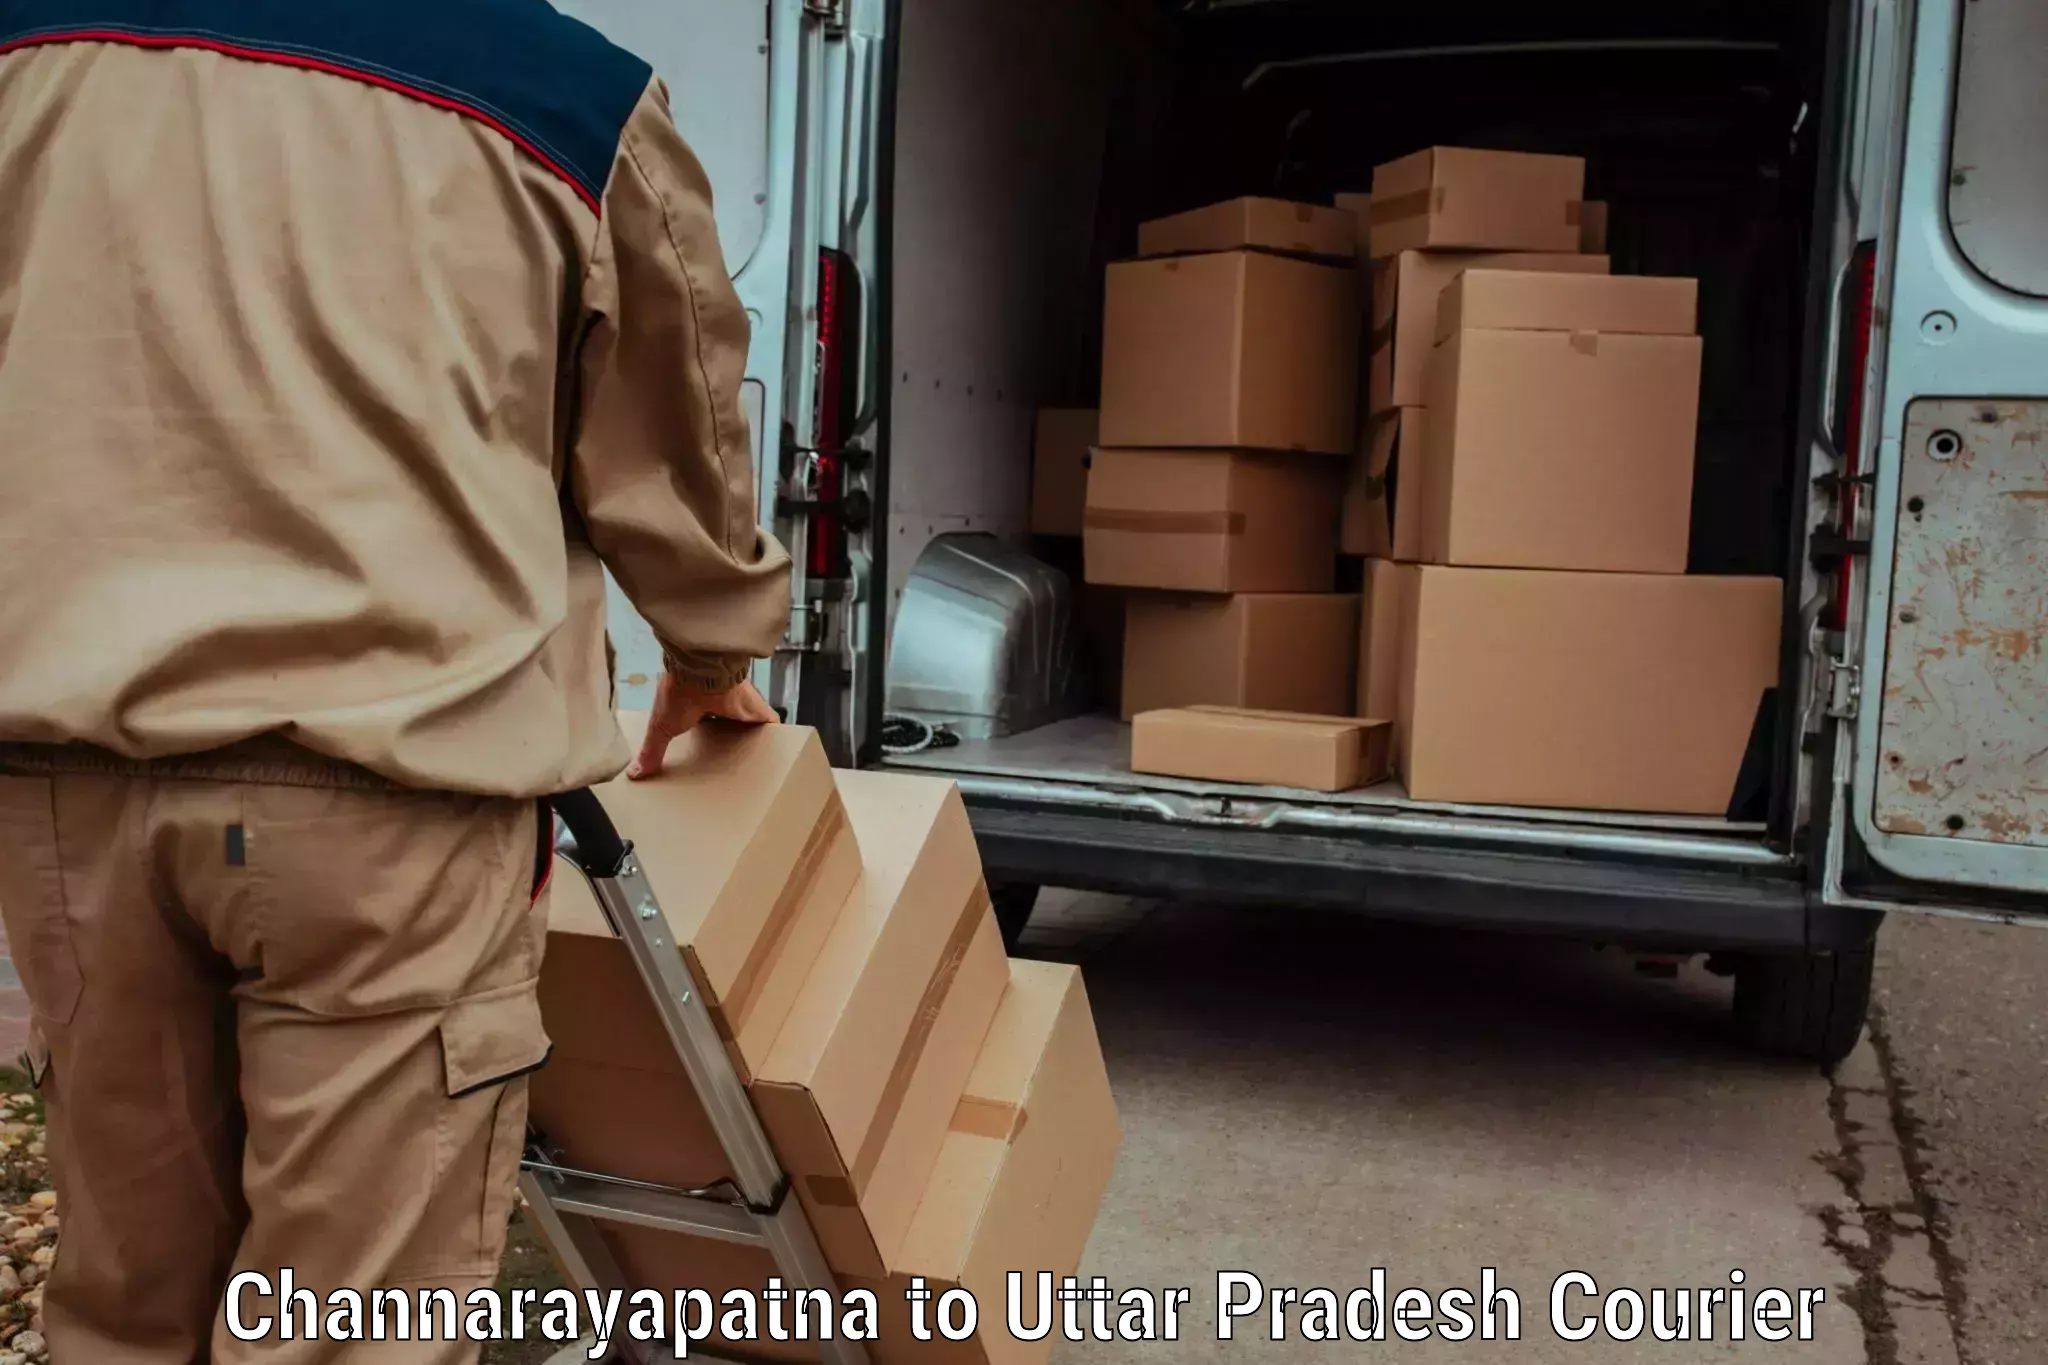 Efficient parcel transport Channarayapatna to Uttar Pradesh